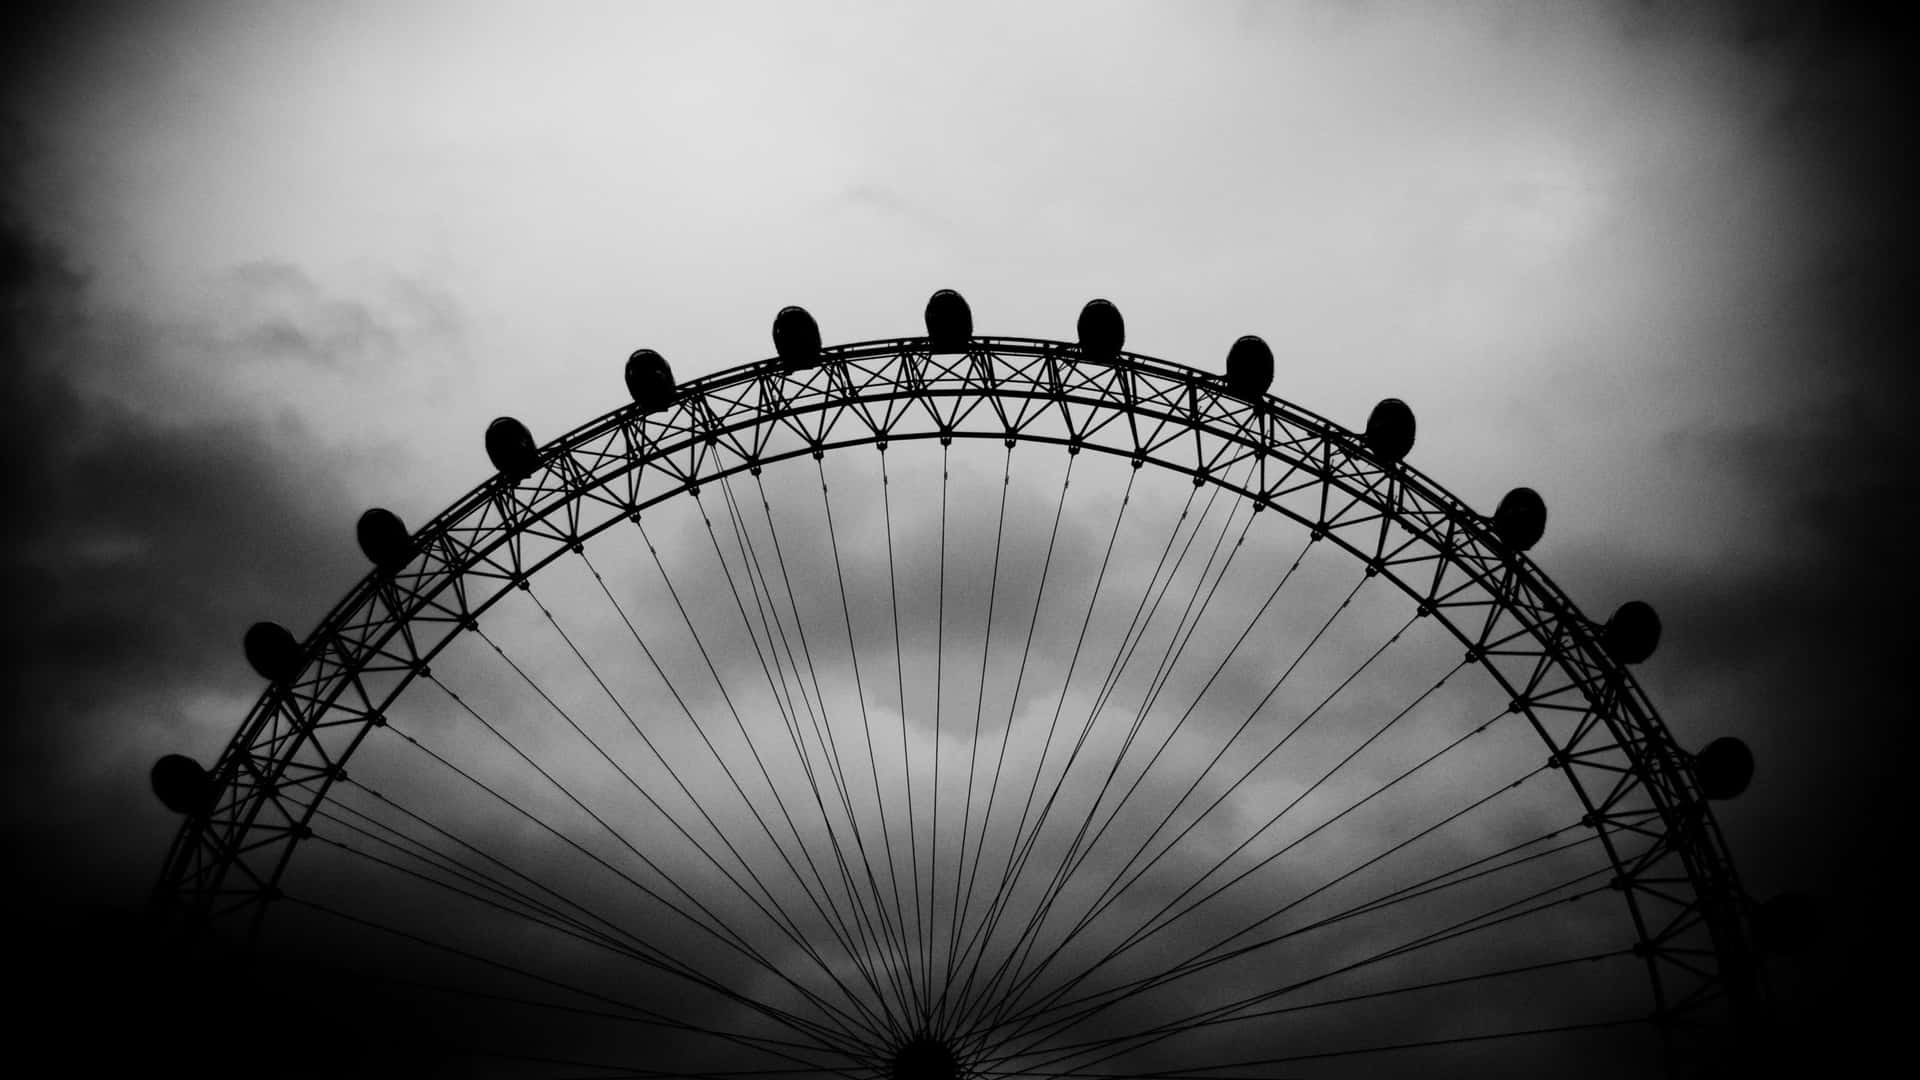 Favolosaimmagine In Bianco E Nero Della London Eye